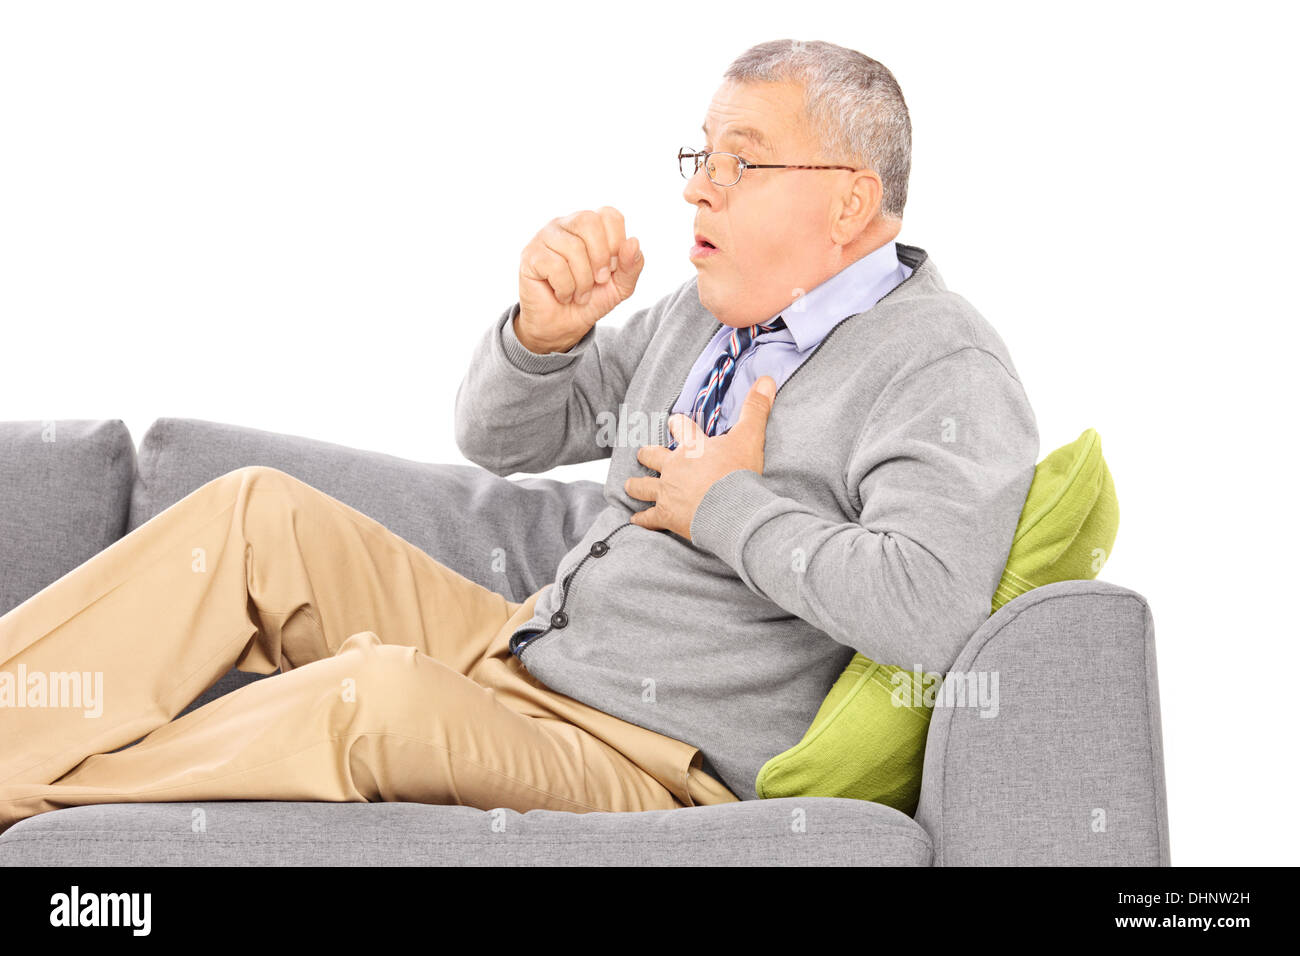 Hombre maduro, sentado en un sofá tos debido a enfermedad pulmonar Foto de stock